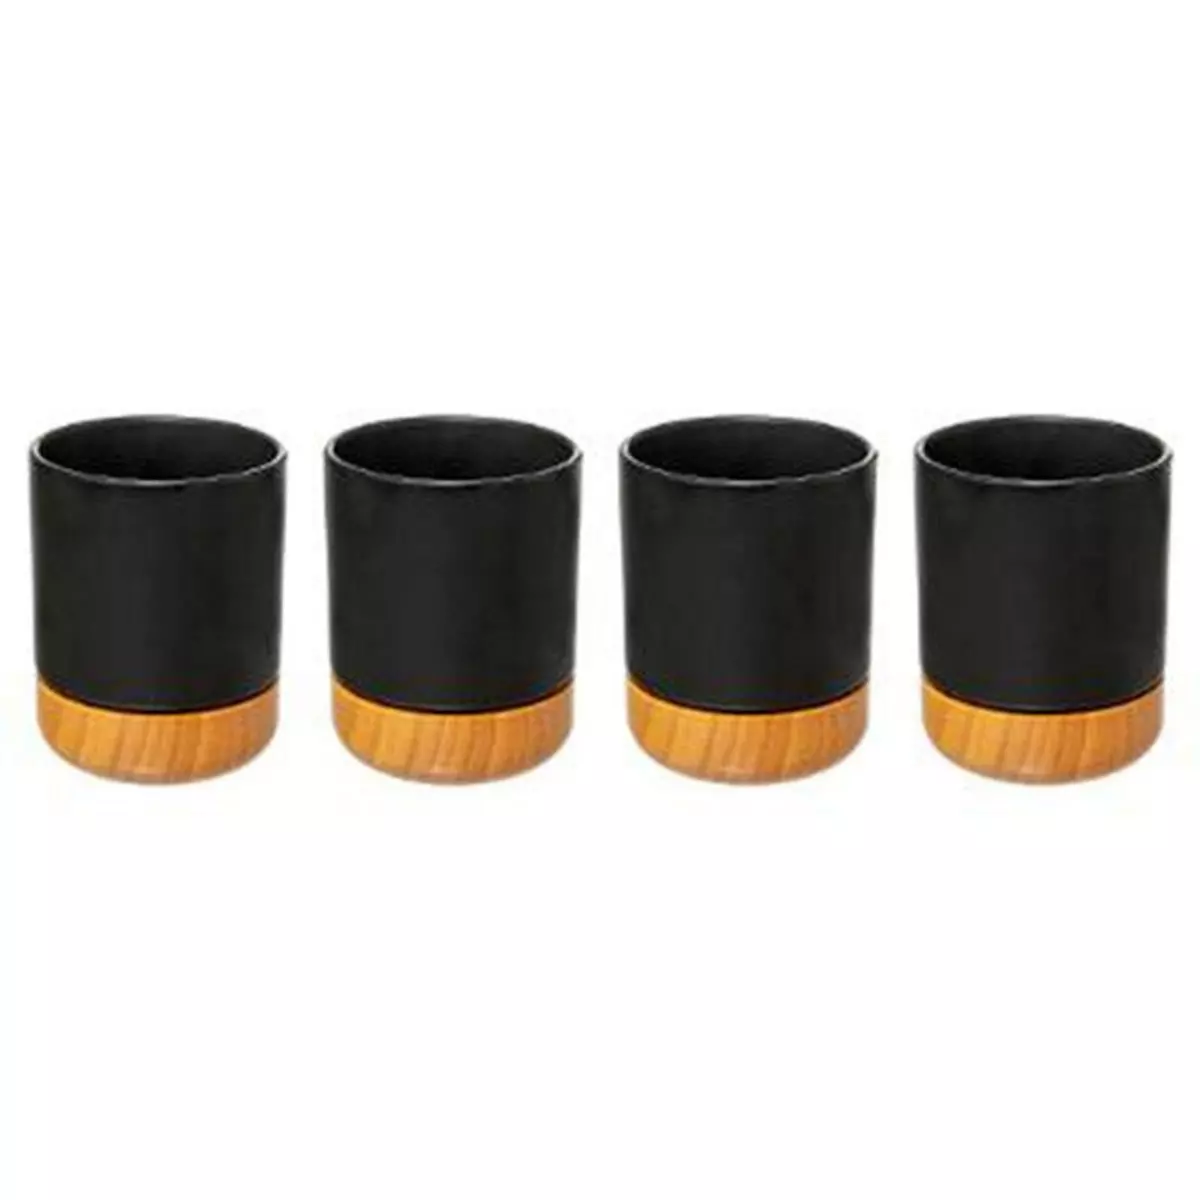  Lot de 4 Tasses à Café  Modern Wood  12cl Noir